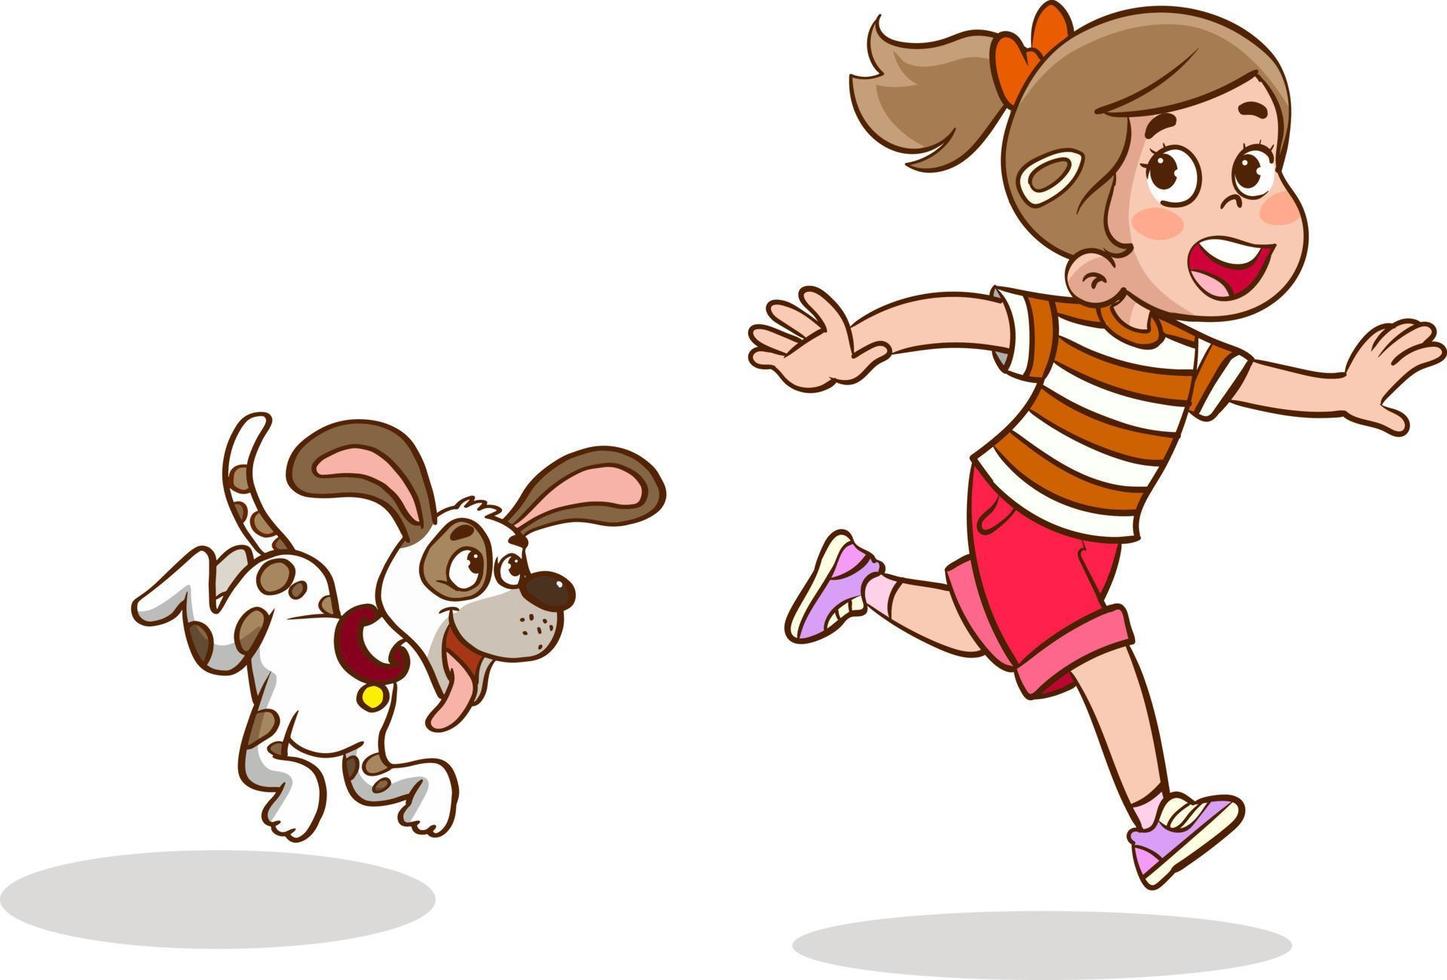 girl running from dog cartoon vector